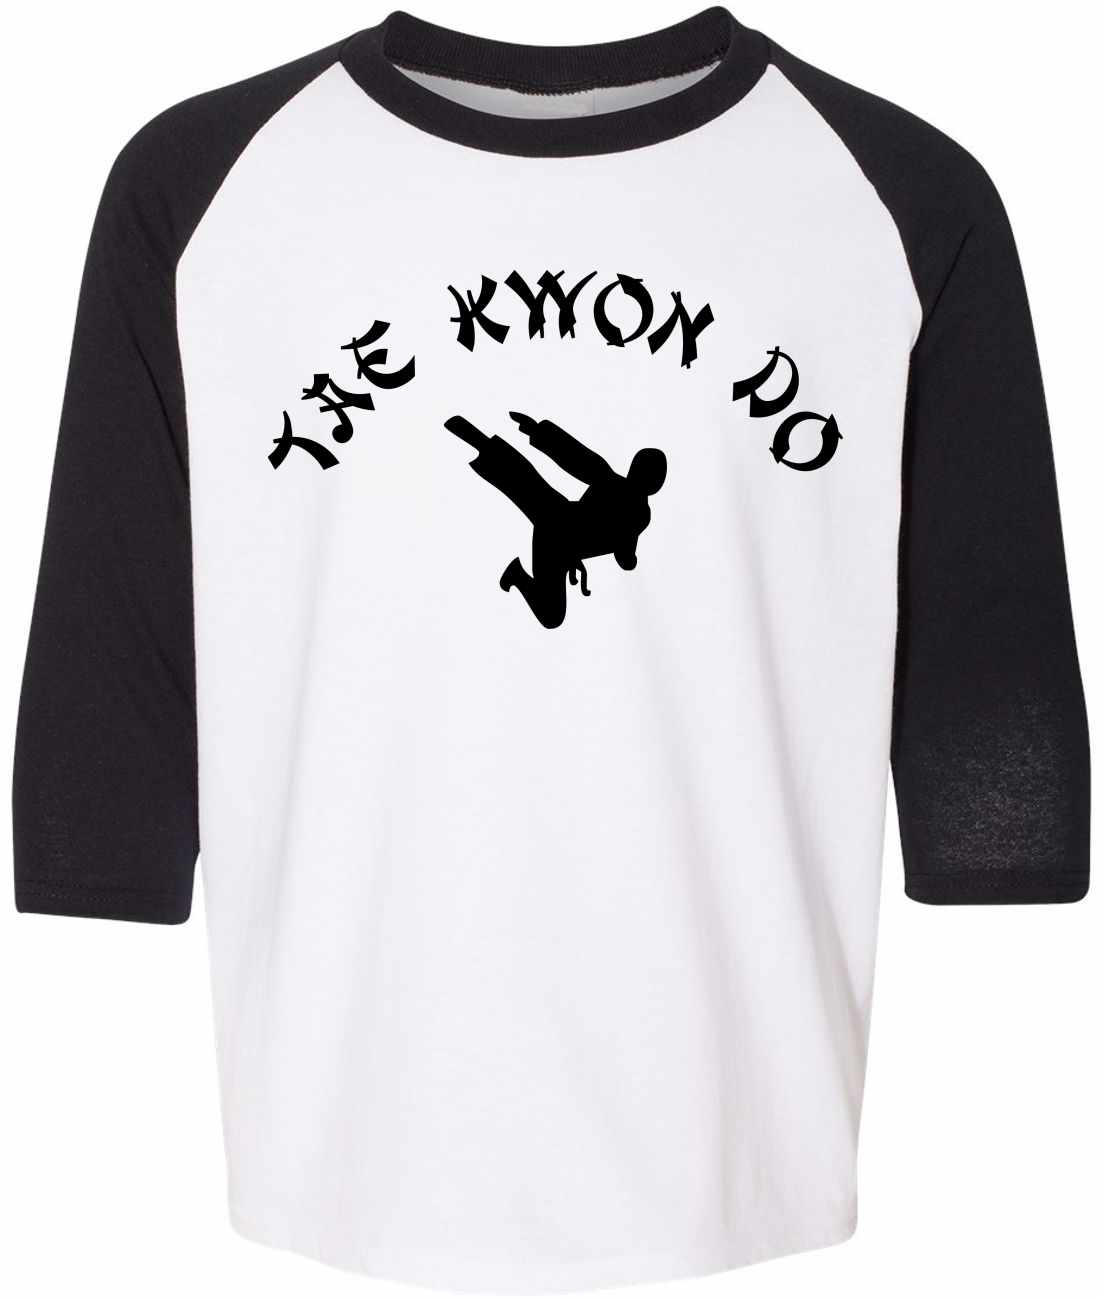 TAE KWON DO on Youth Baseball Shirt